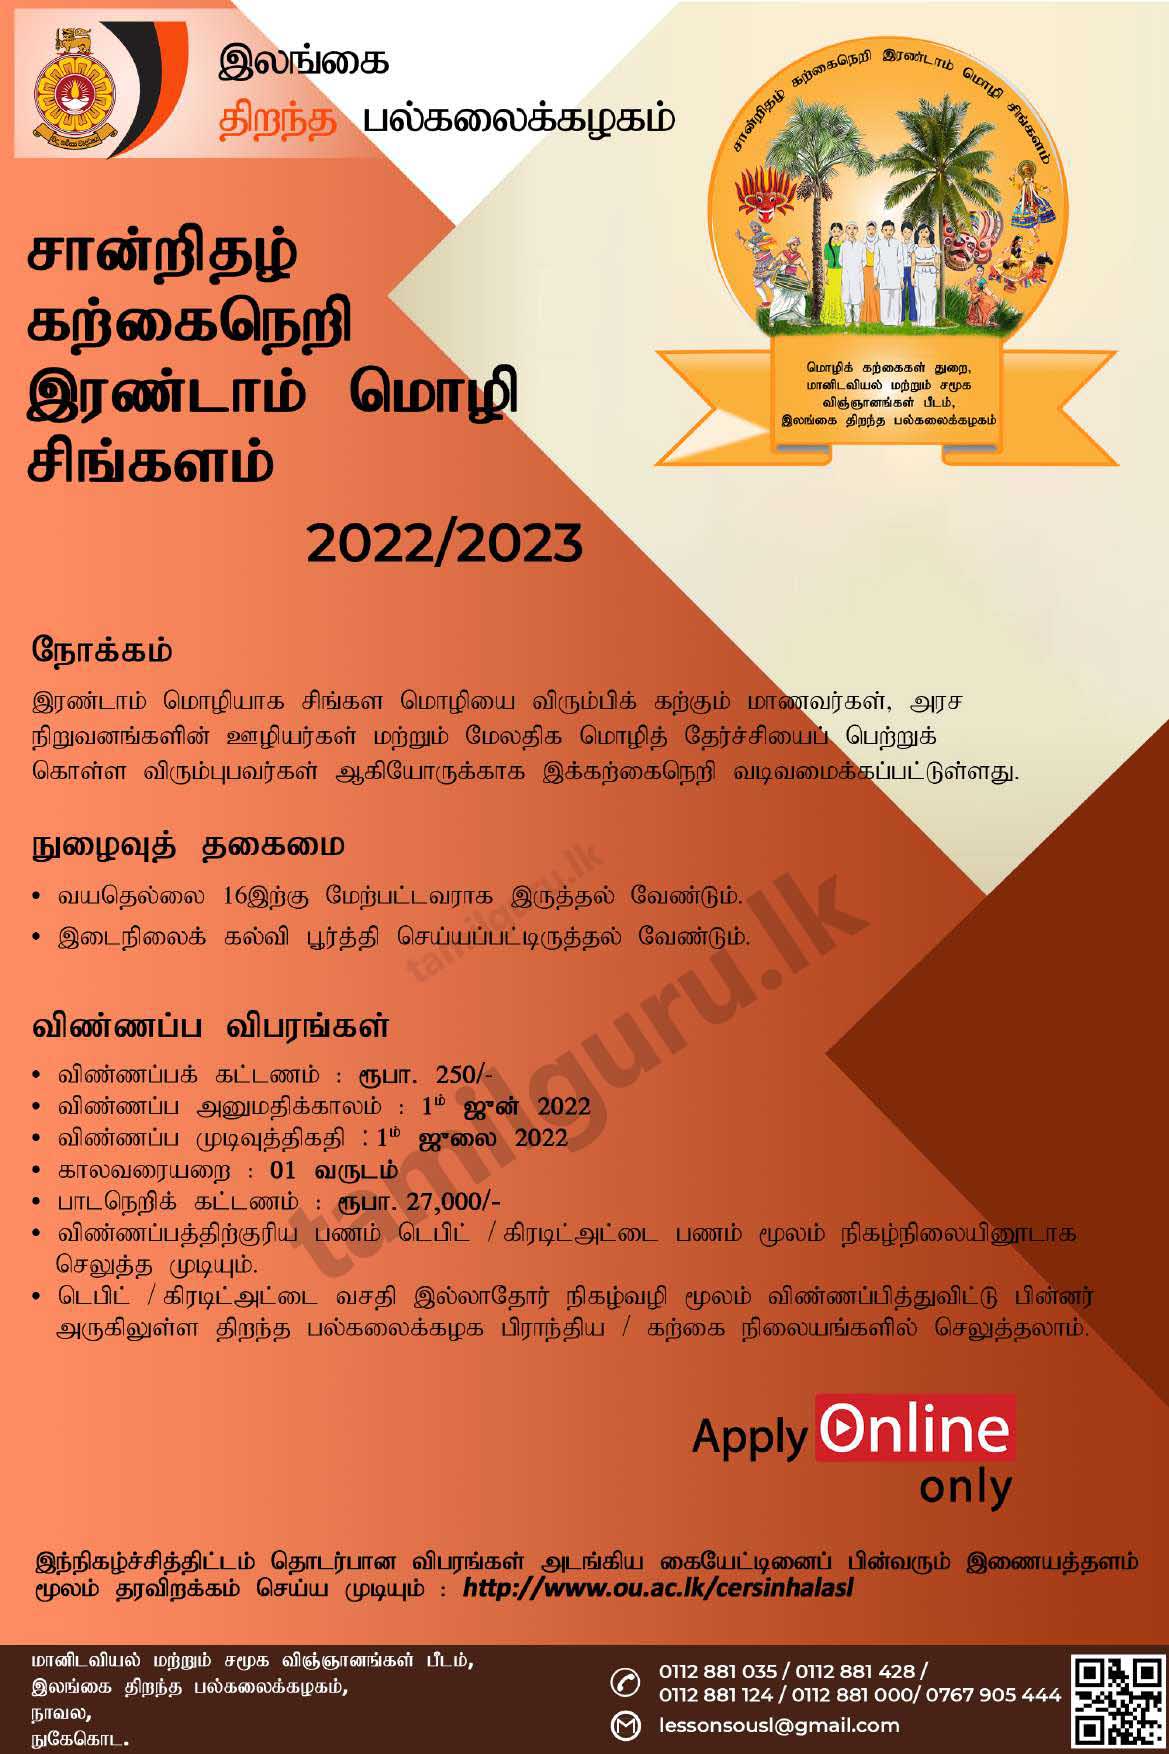 Certificate in Sinhala as a Second Language Course 2022/2023 - The Open University of Sri Lanka (OUSL) / இரண்டாம் மொழி சிங்களம் சான்றிதழ் கற்கைநெறி - இலங்கை திறந்த பல்கலைக்கழகம்